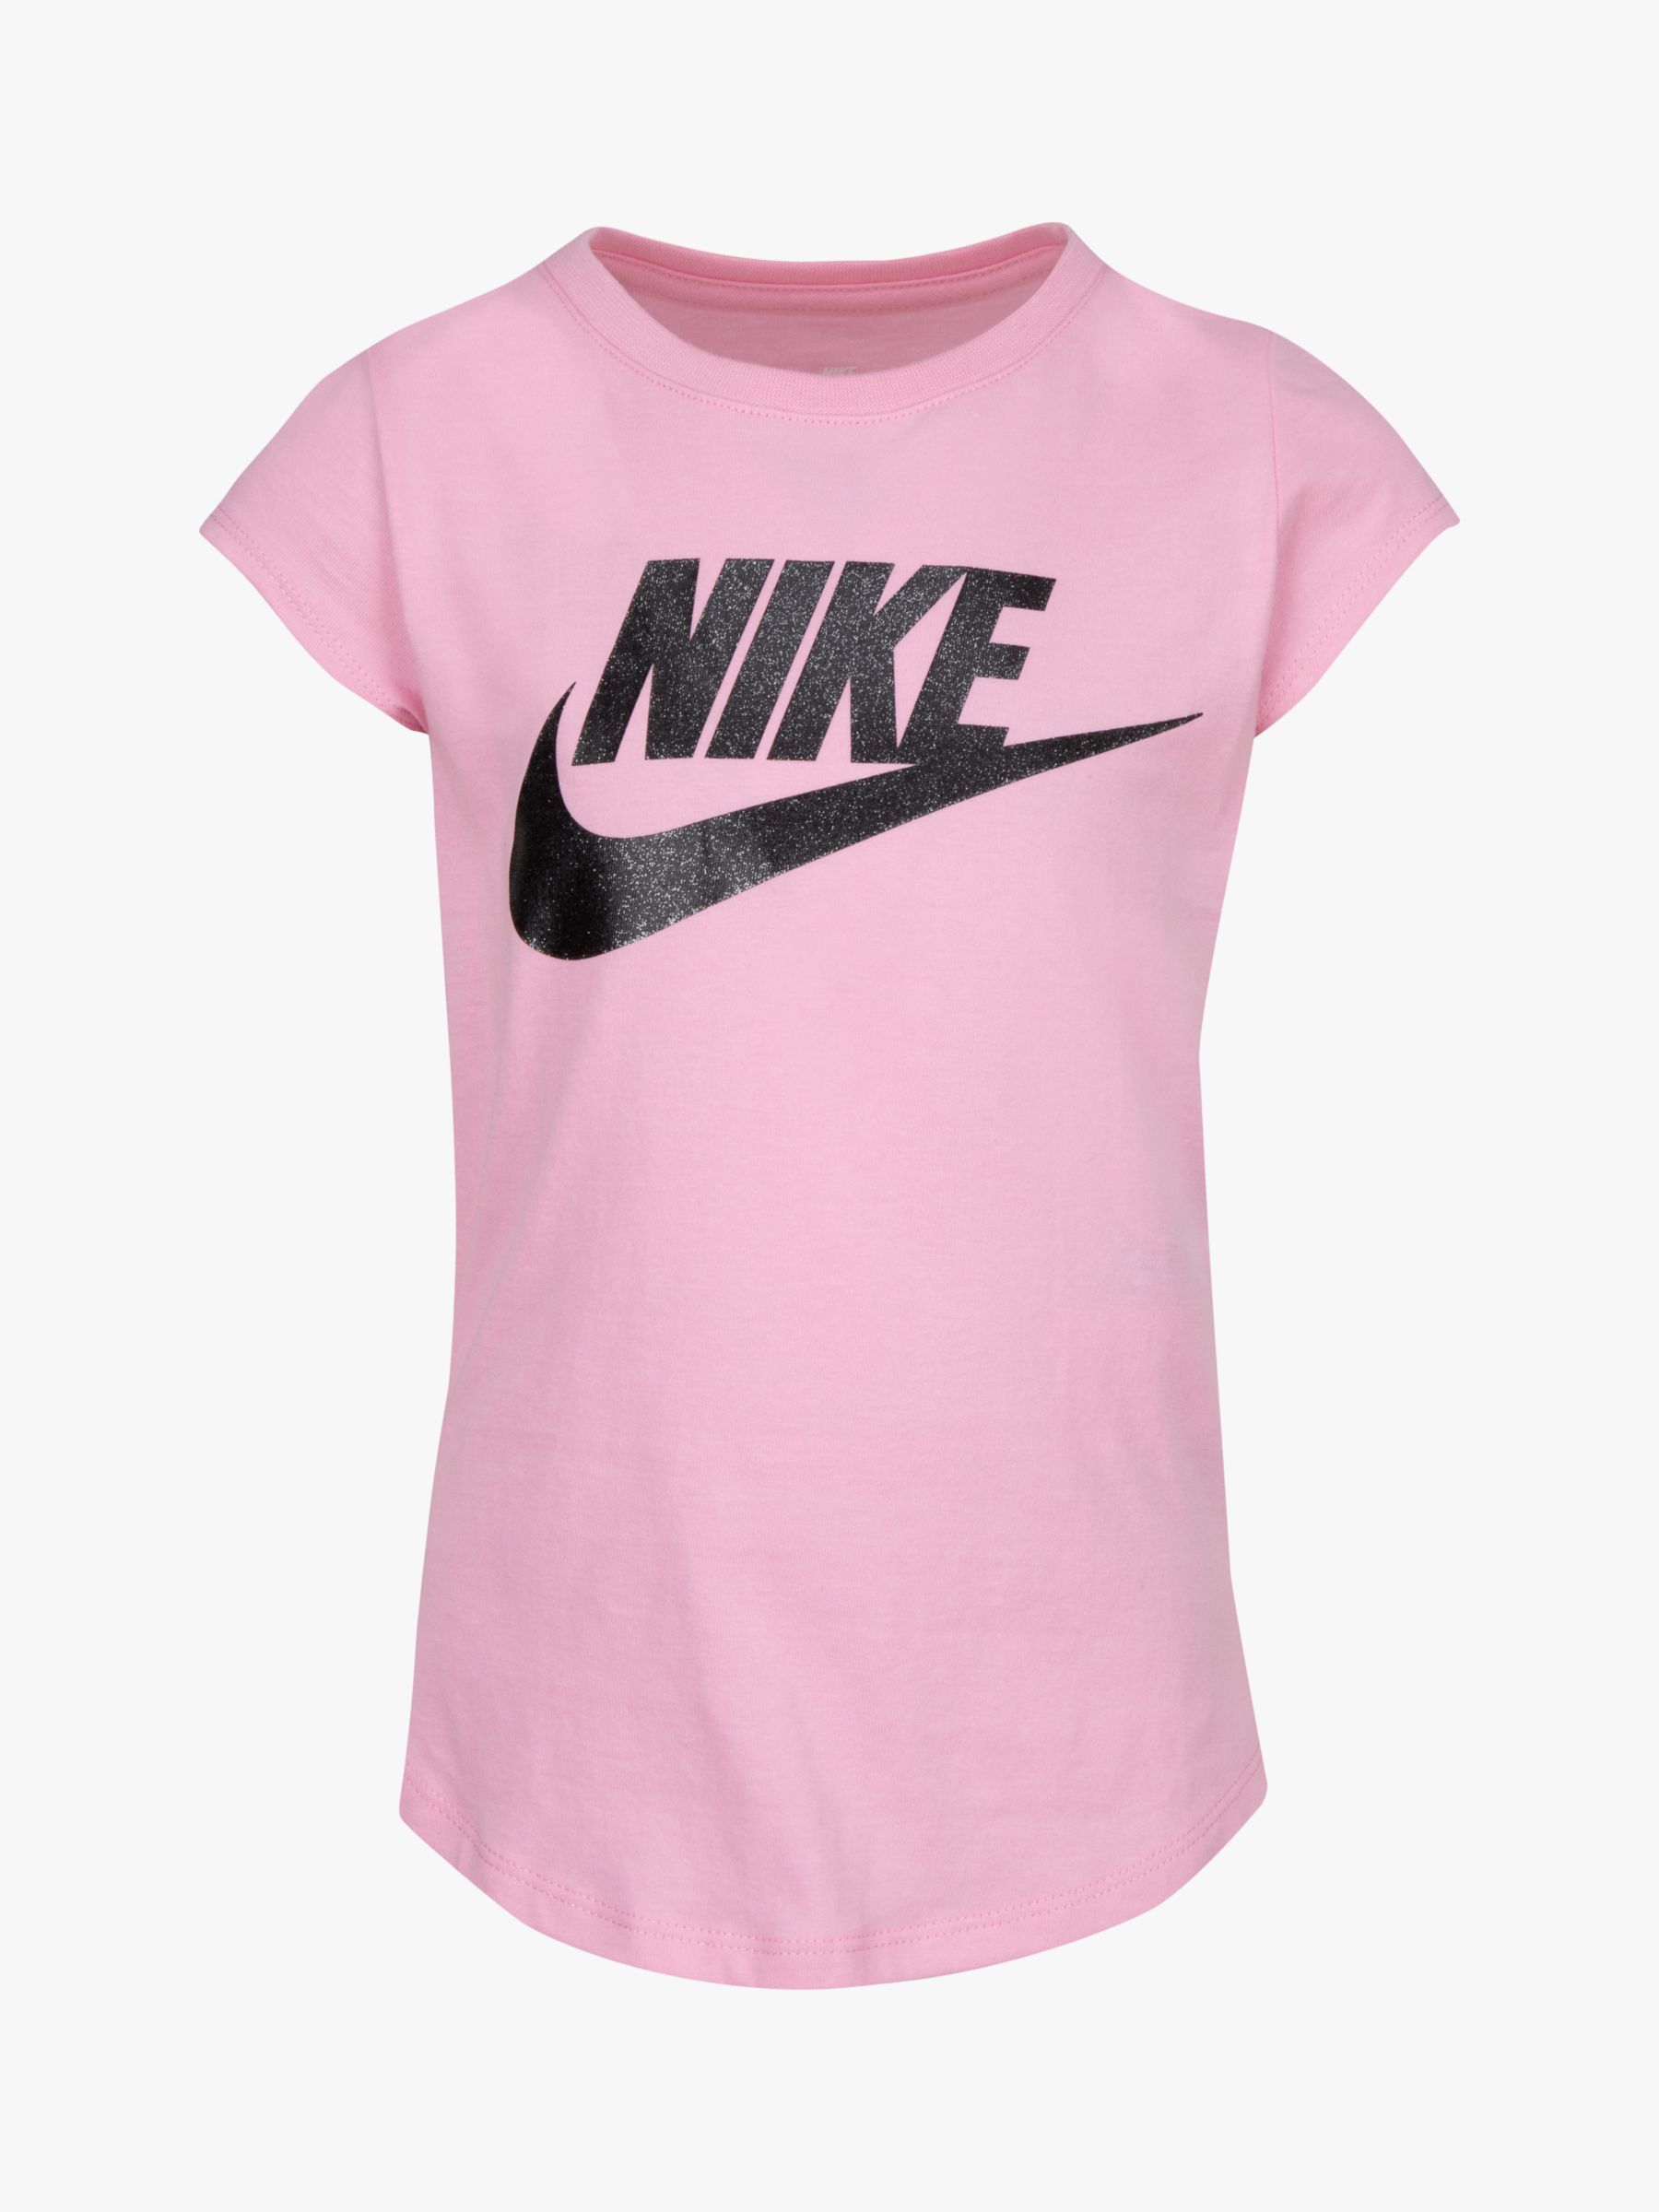 Nike Kids' Logo Short Sleeve Top, Pink/Black at John Lewis & Partners